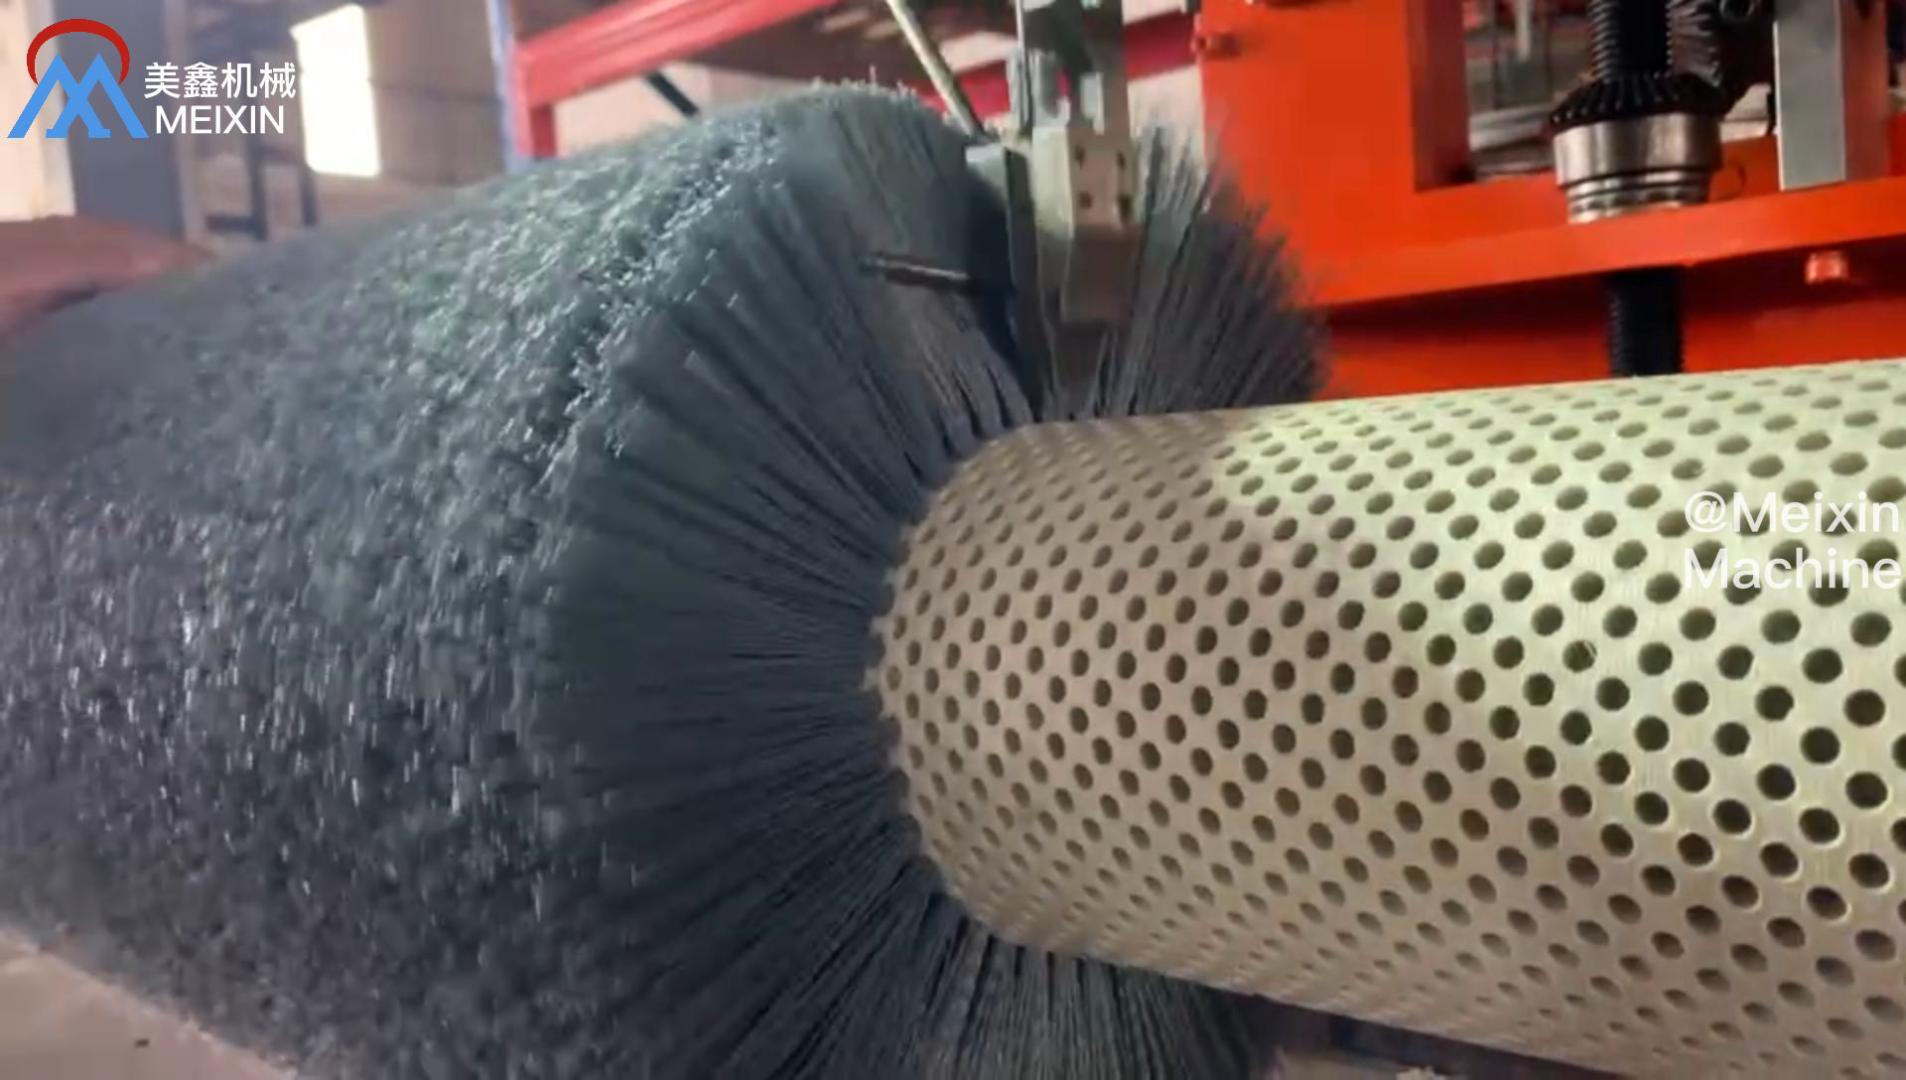 Strict Standard Silicon Carbide Bristles Roller Brush Machine